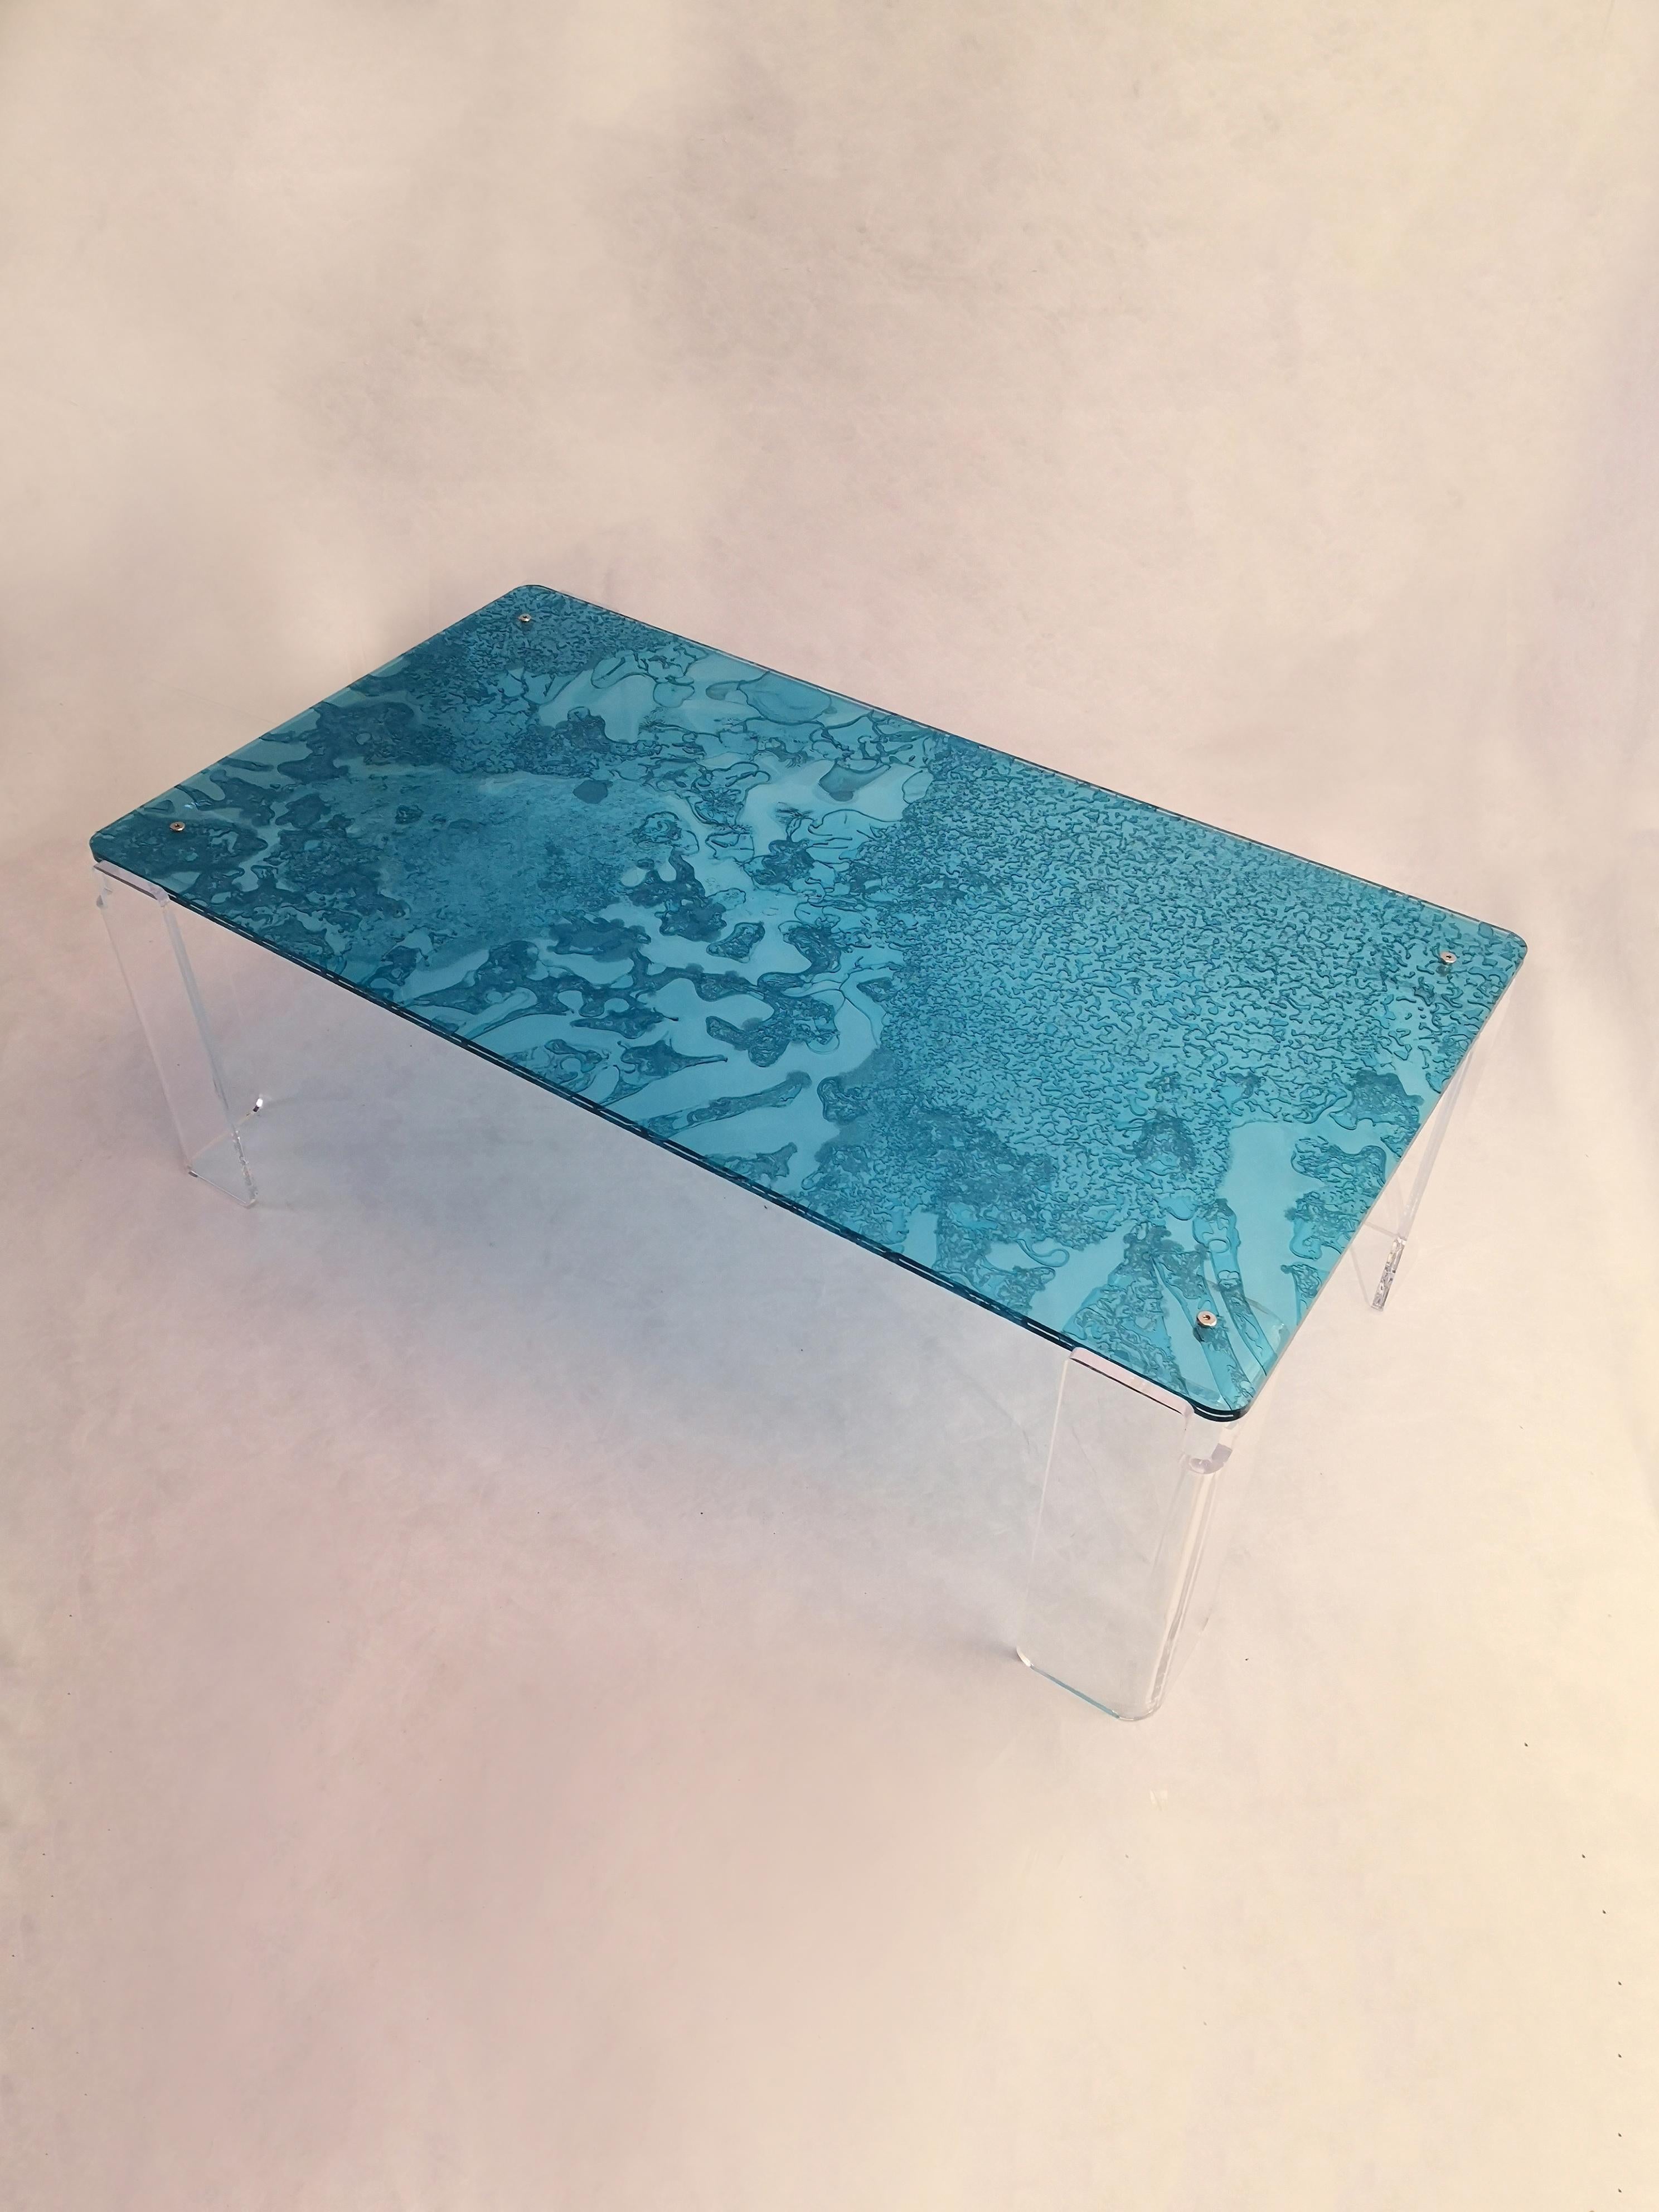 Couchtisch, handgefertigt aus transparentem Acryl, gefärbt mit einer innovativen Technologie.
Das MATERIAL wird durch die Verschmelzung von drei Platten hergestellt, von denen eine
teilweise ausgehärtetes Zentrum.
Dieser Prozess erzeugt